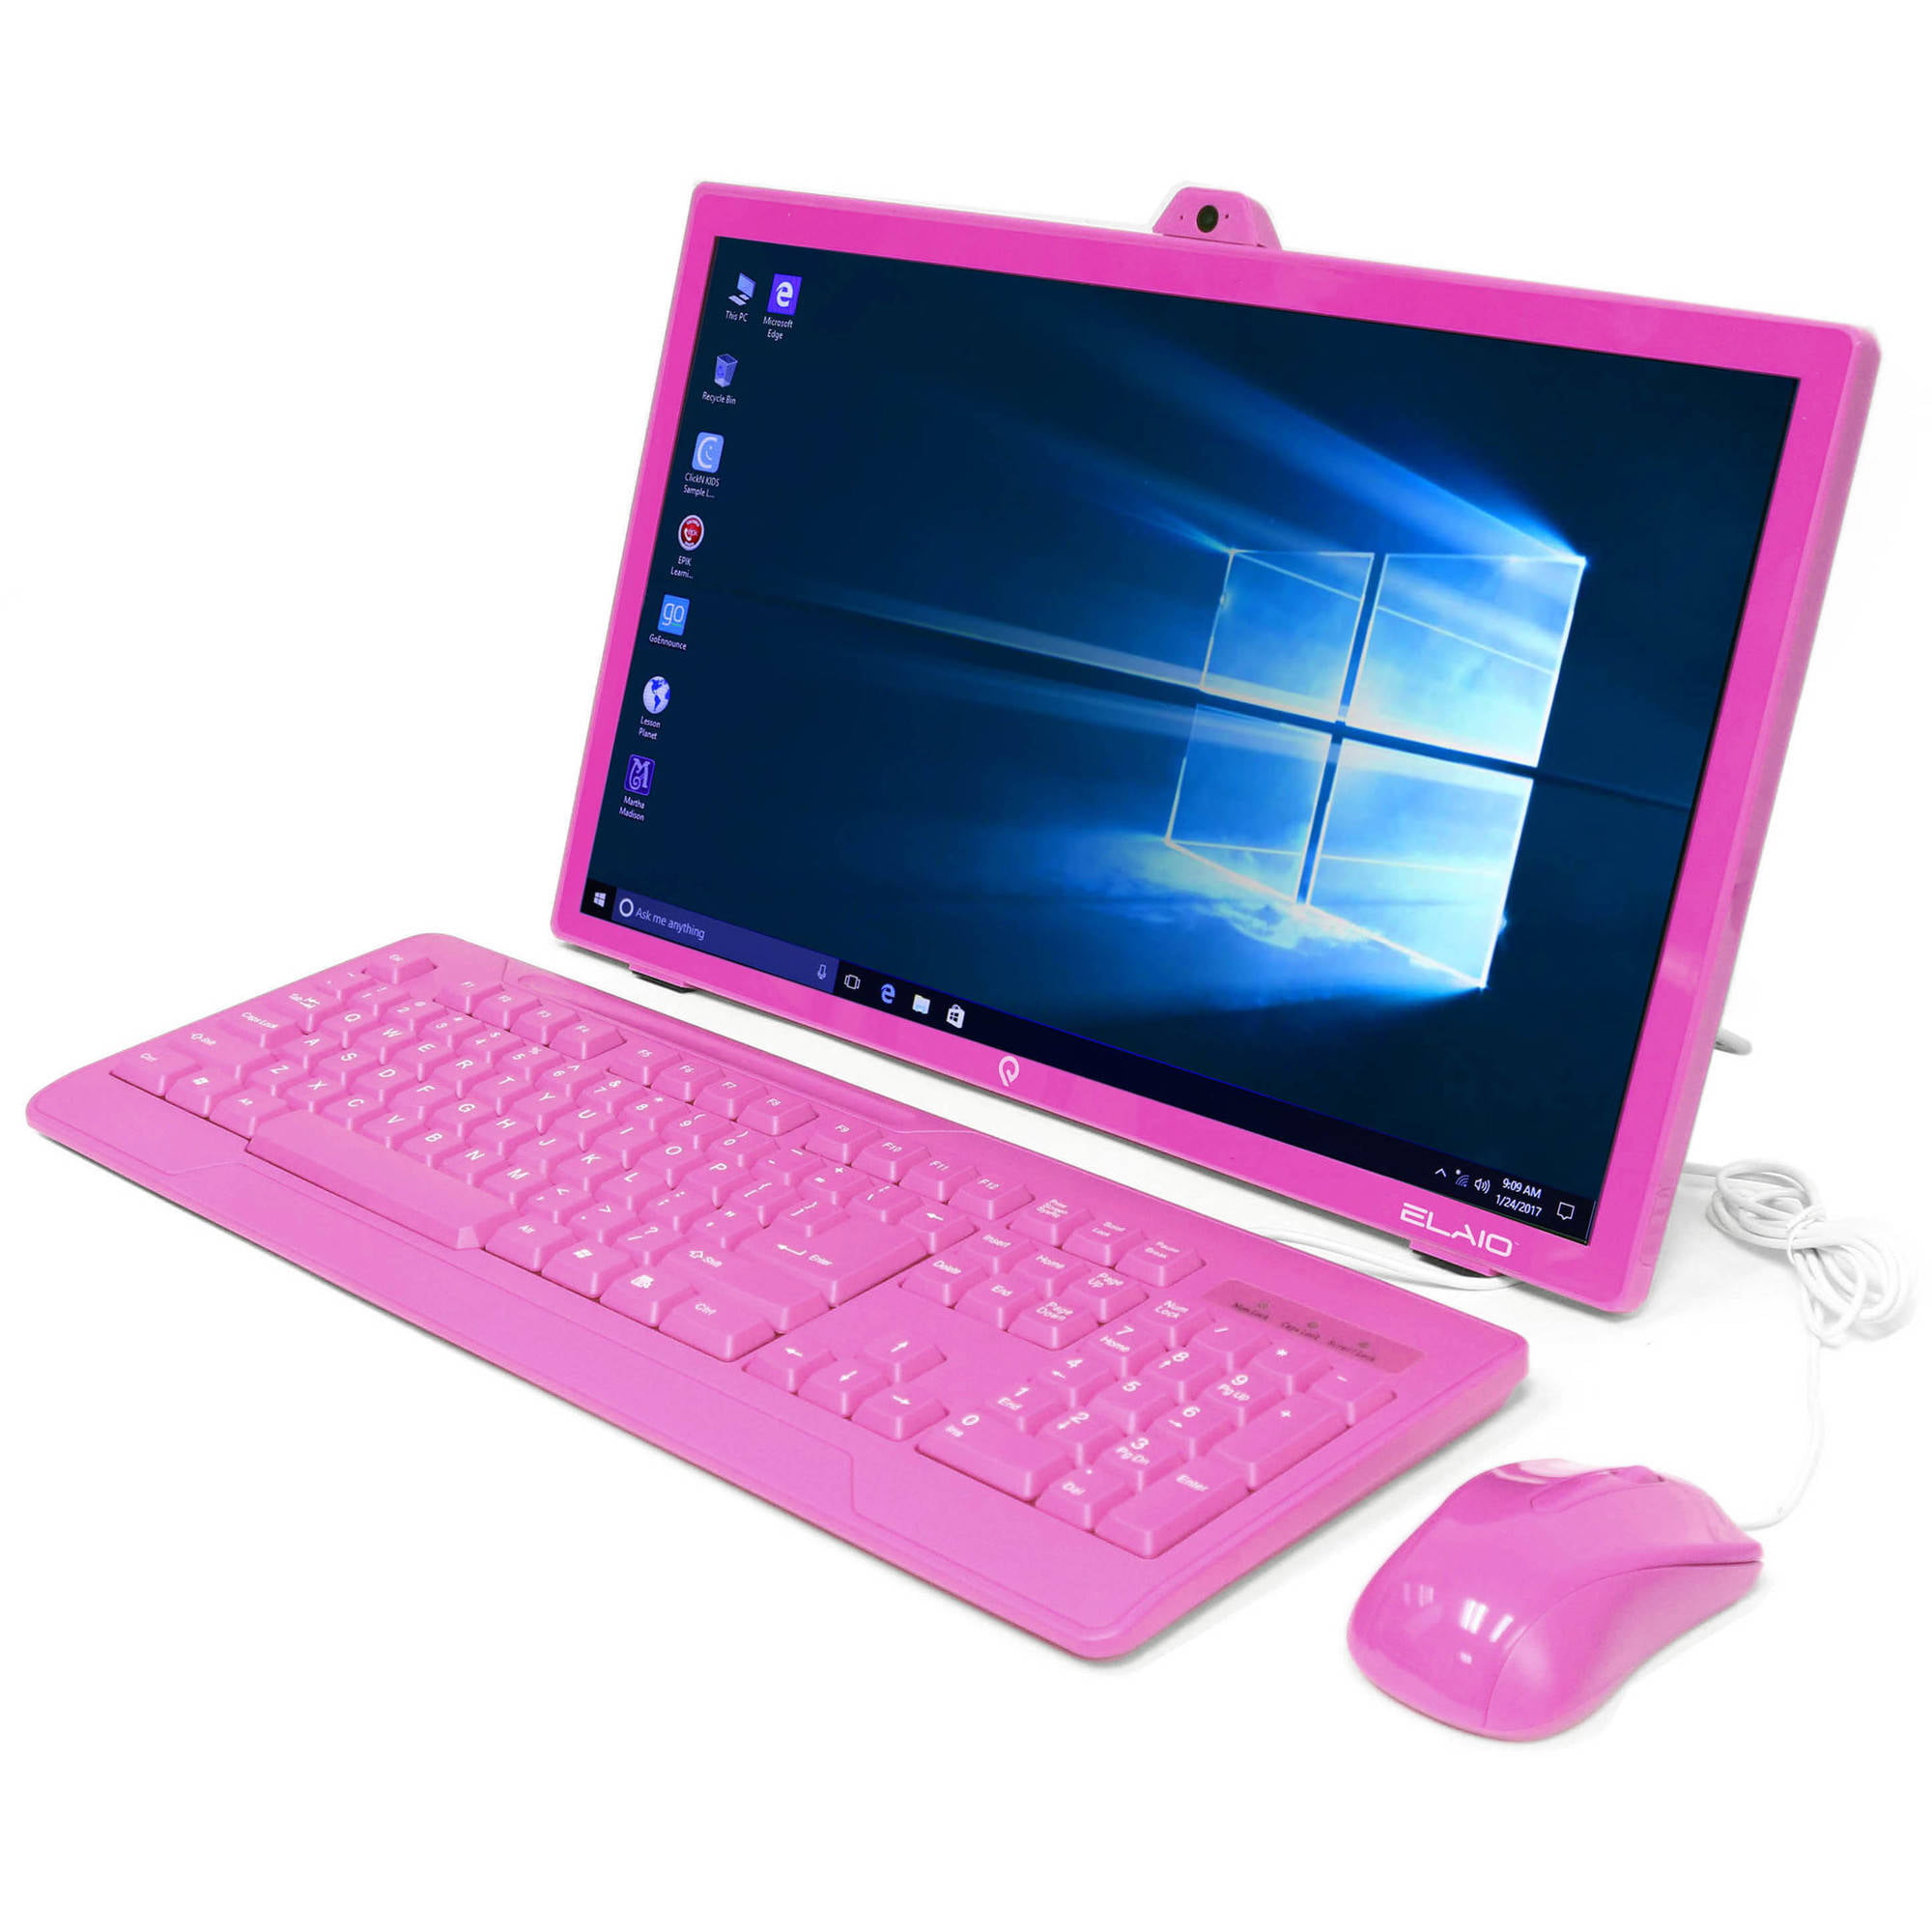 Купить ноутбук на озоне недорого. Ноутбук для девочек. Компьютер для детей. Компьютер для девочек. Розовый компьютер.